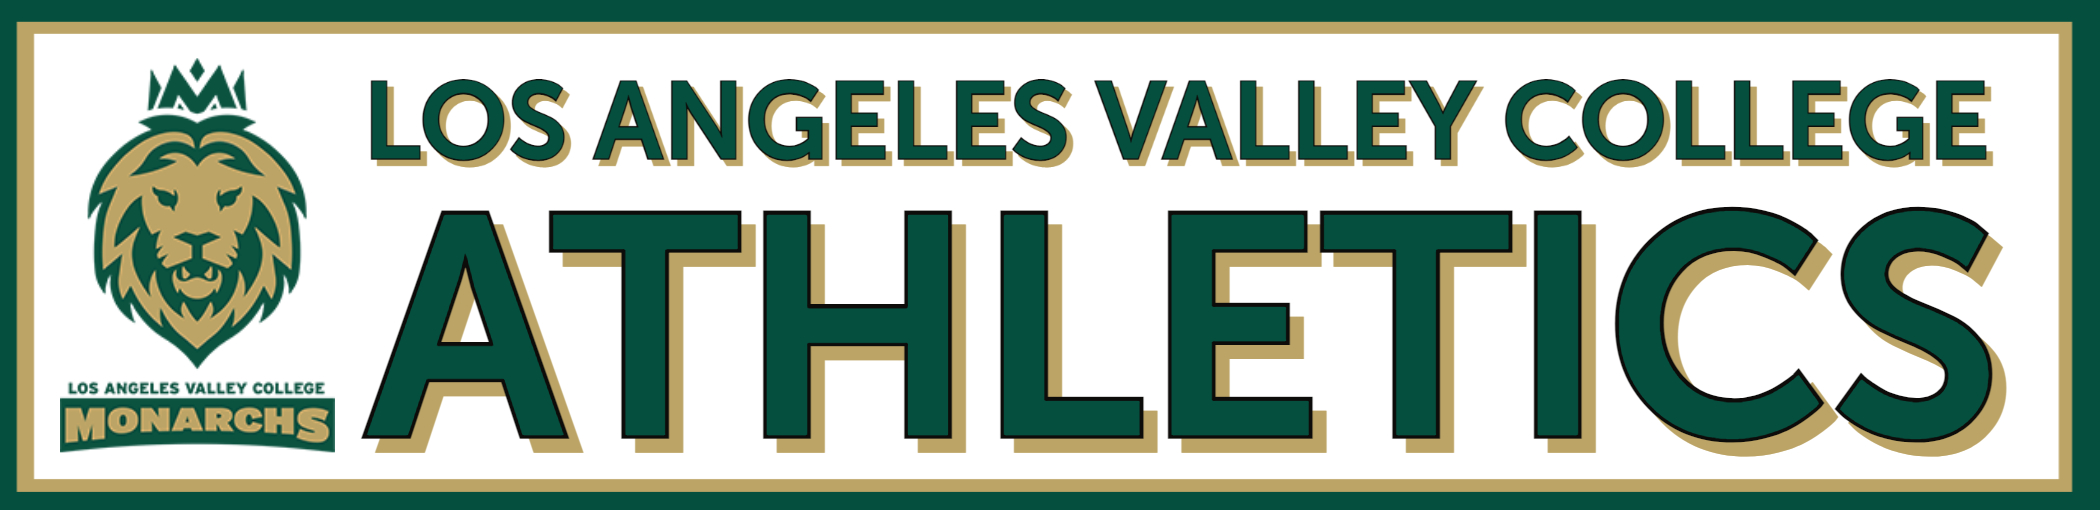 Los Angeles Valley College Athletics